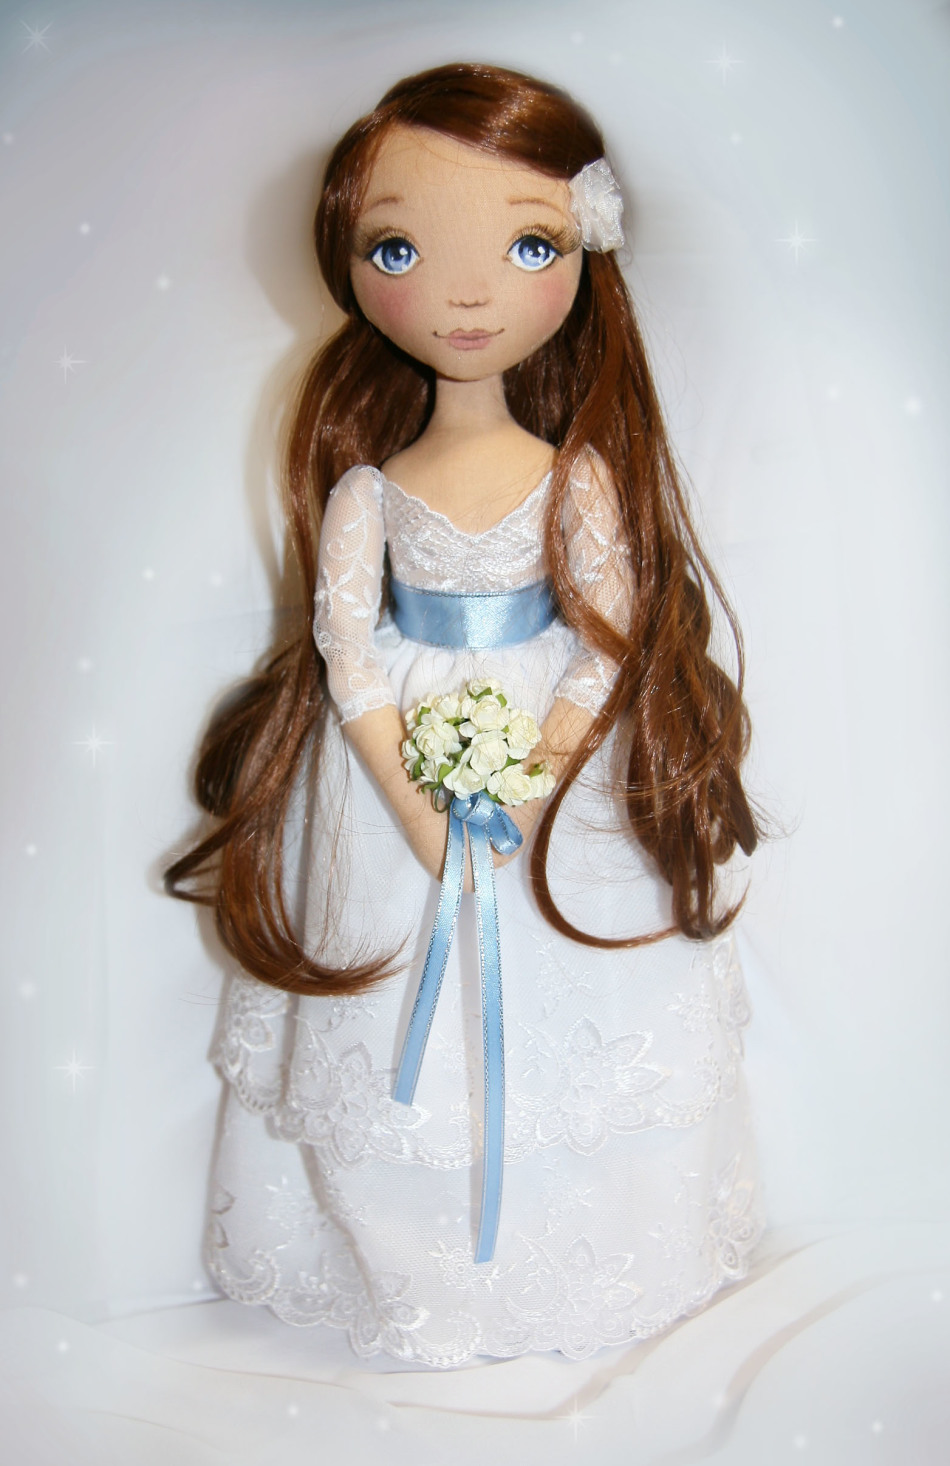 Кукла-невеста